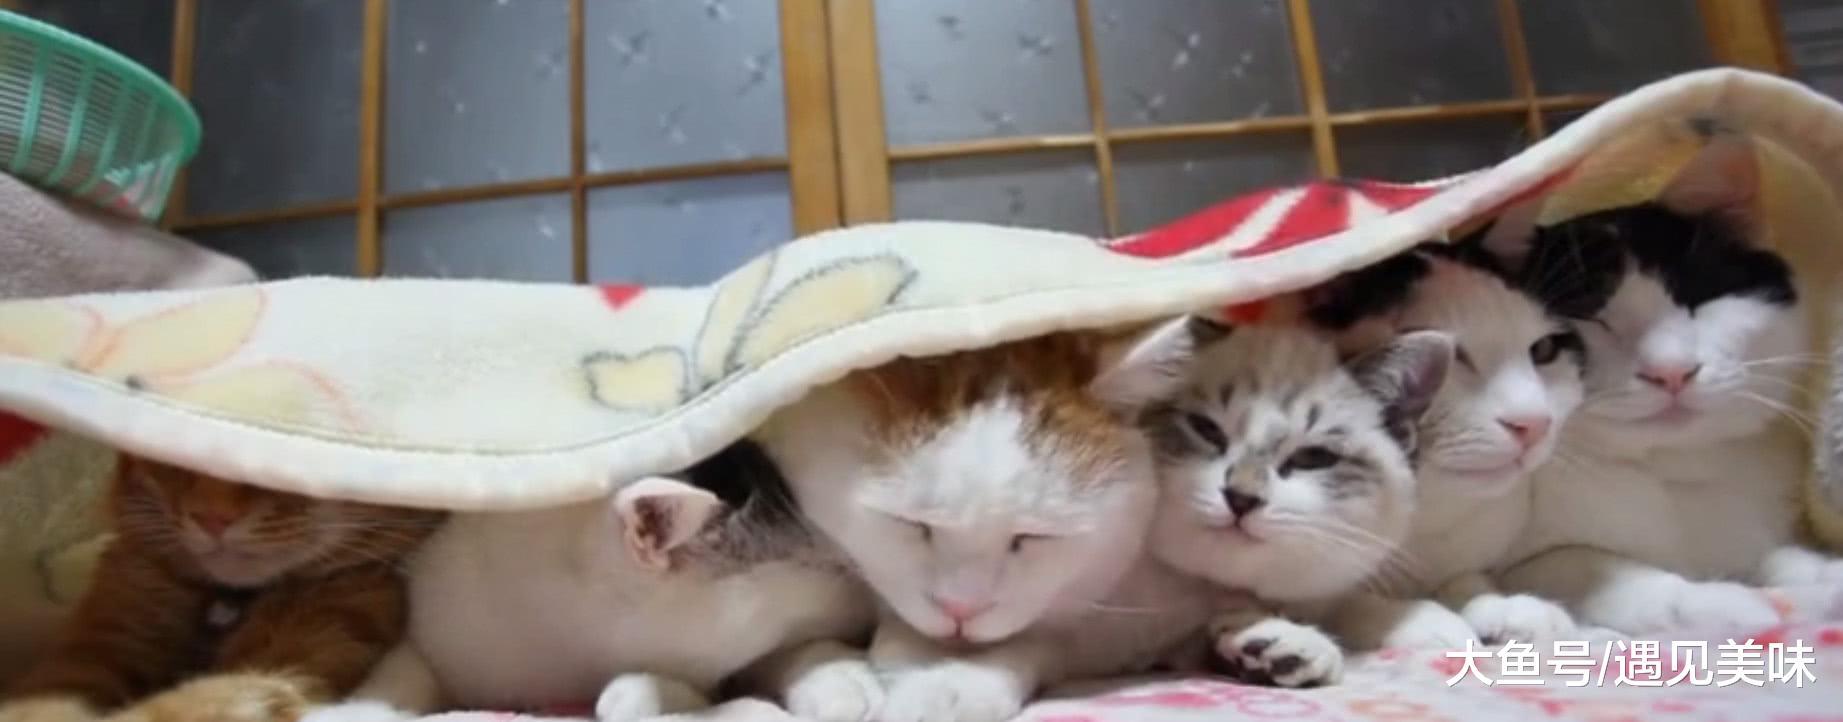 六只猫咪井然有序地排成一排, 趴在被子下面睡大觉, 画面令人暖心